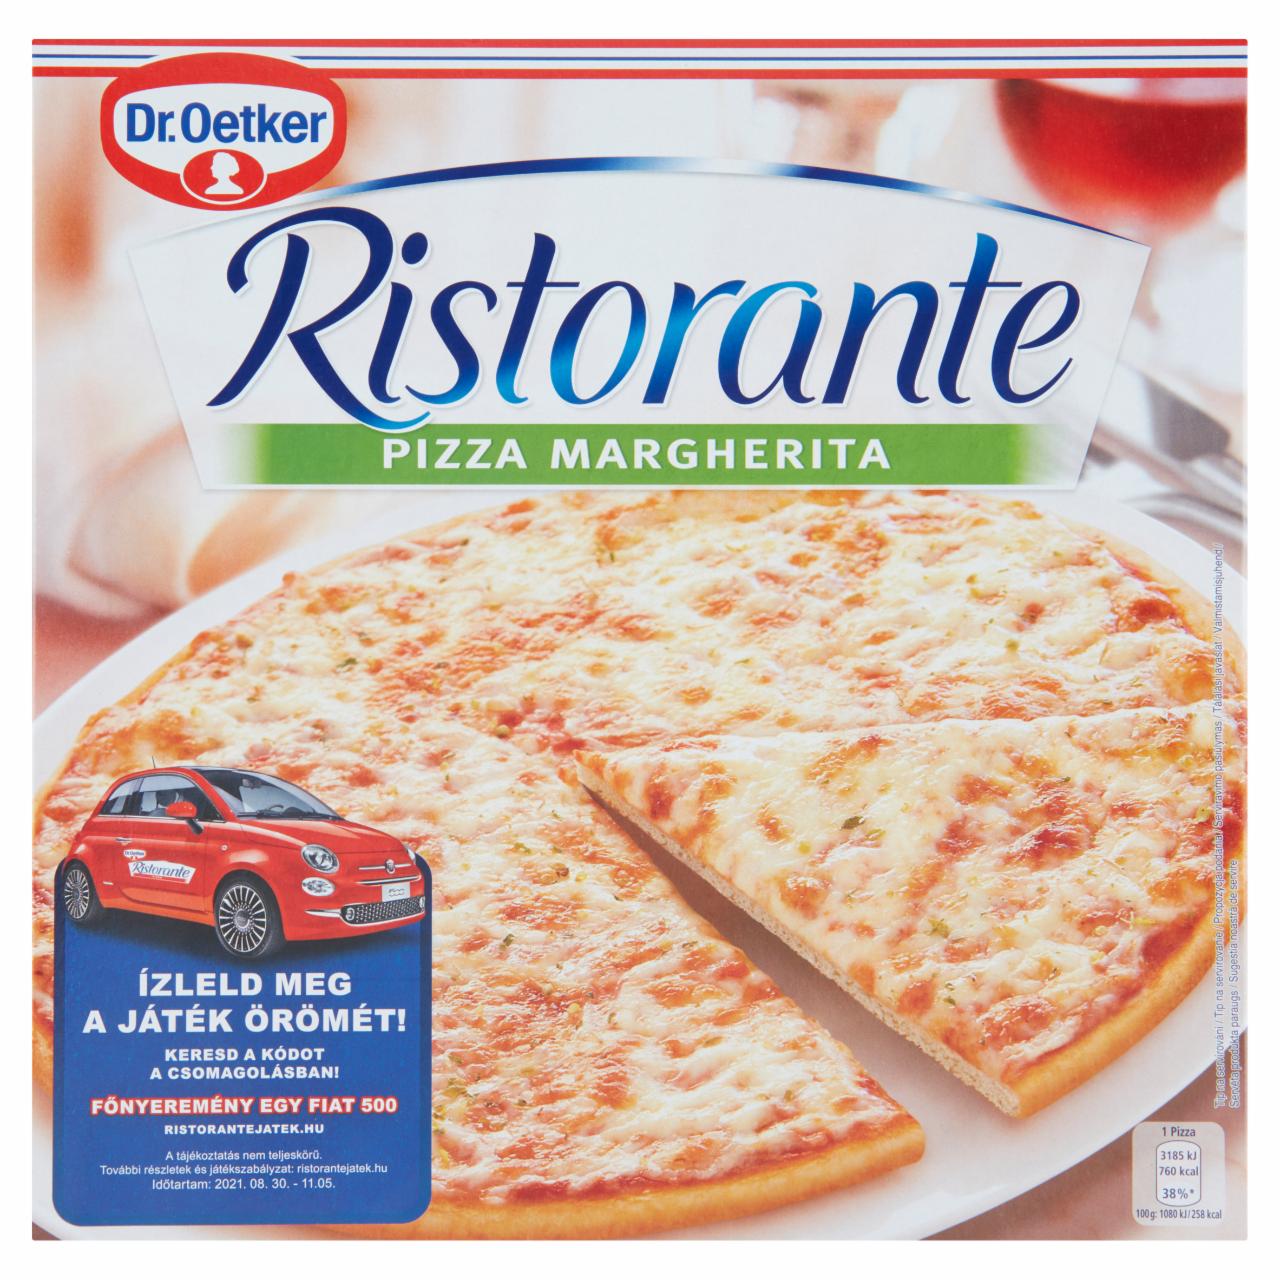 Képek - Dr. Oetker Ristorante Pizza Margherita gyorsfagyasztott pizza mozzarella és gouda sajttal 295 g